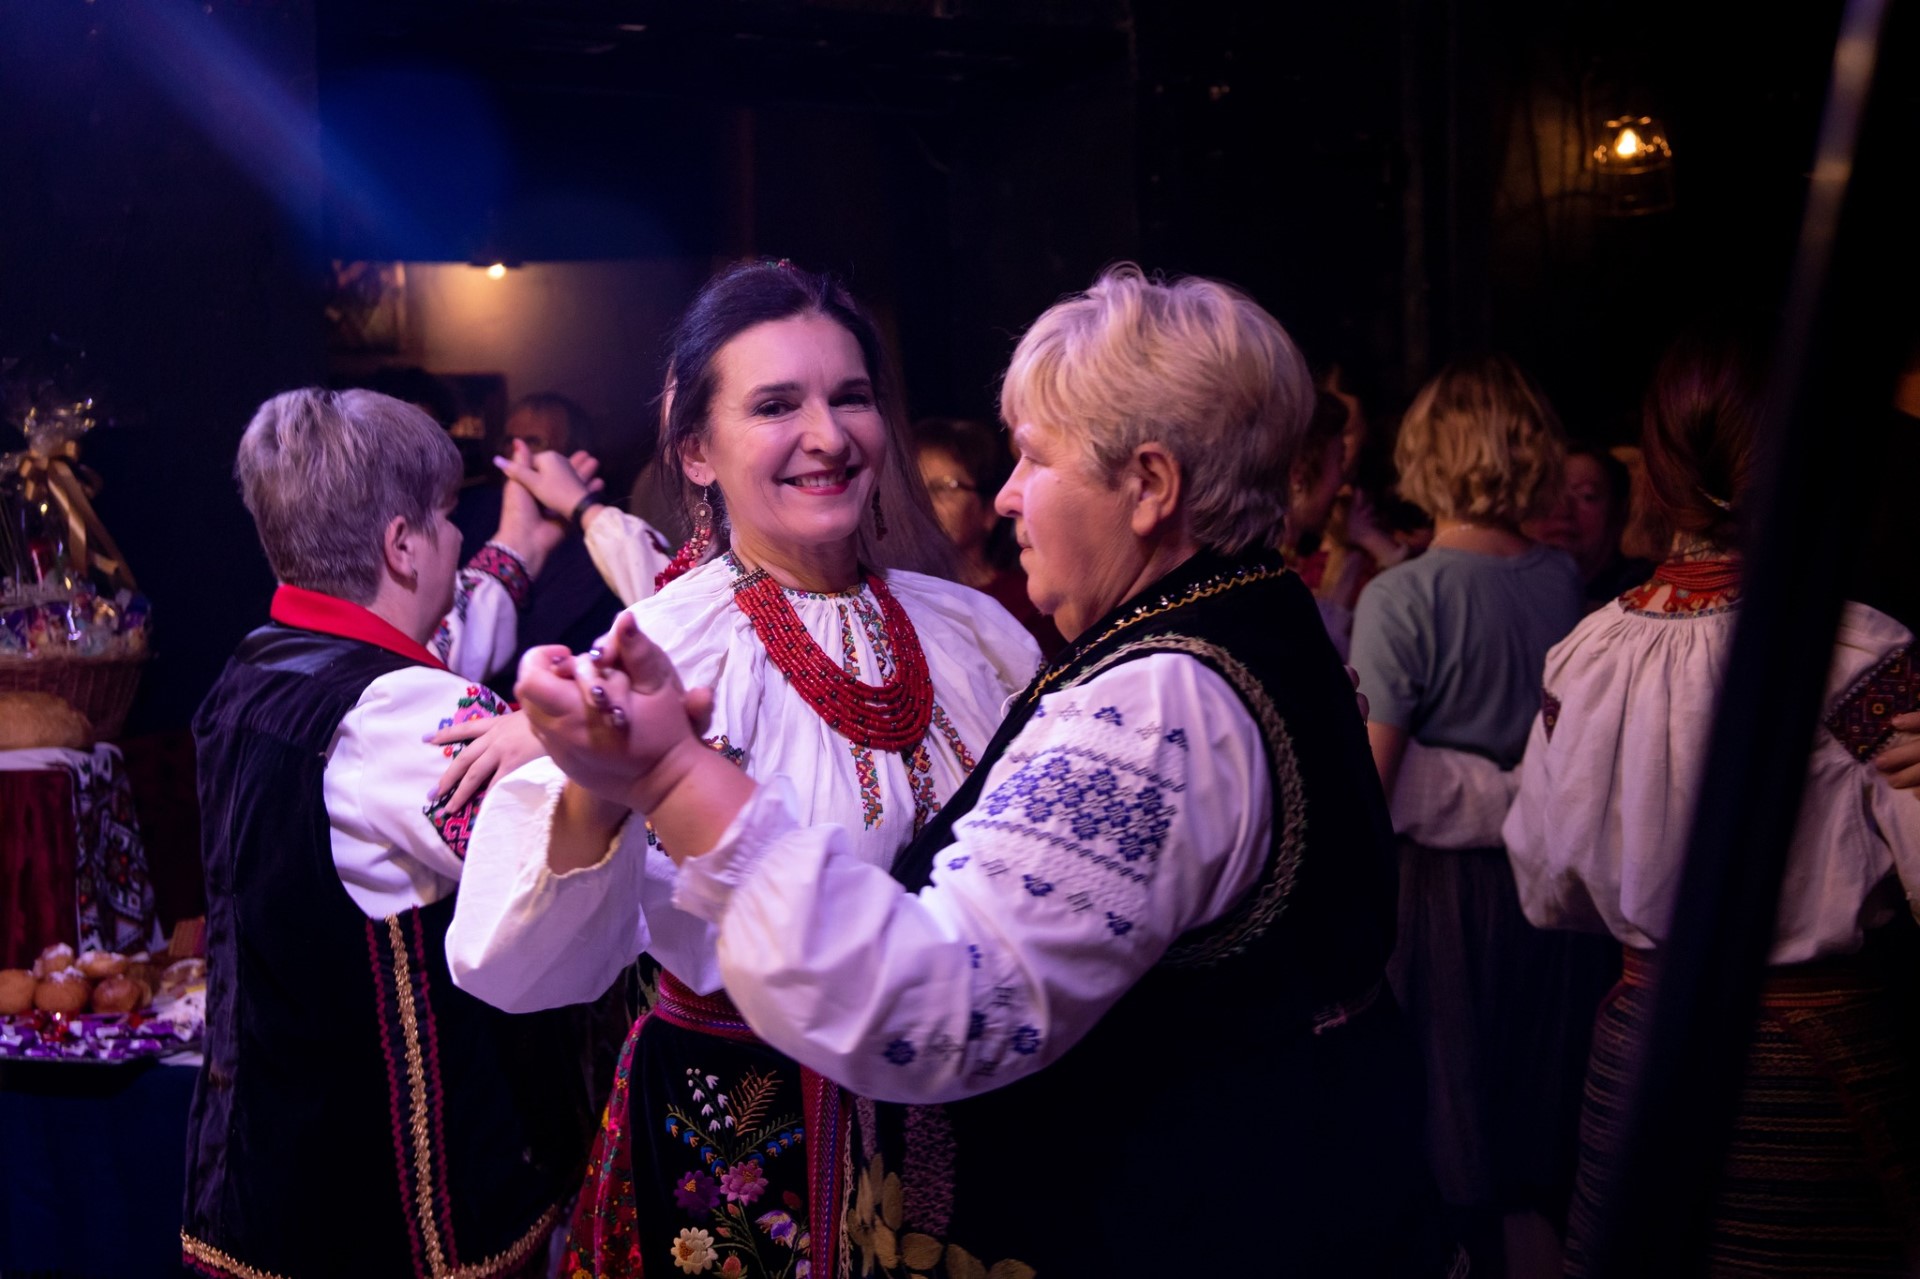 Участники танцевального вечера веселятся, как наши предки лет 100 назад. Фото: ФБ ДРИГ